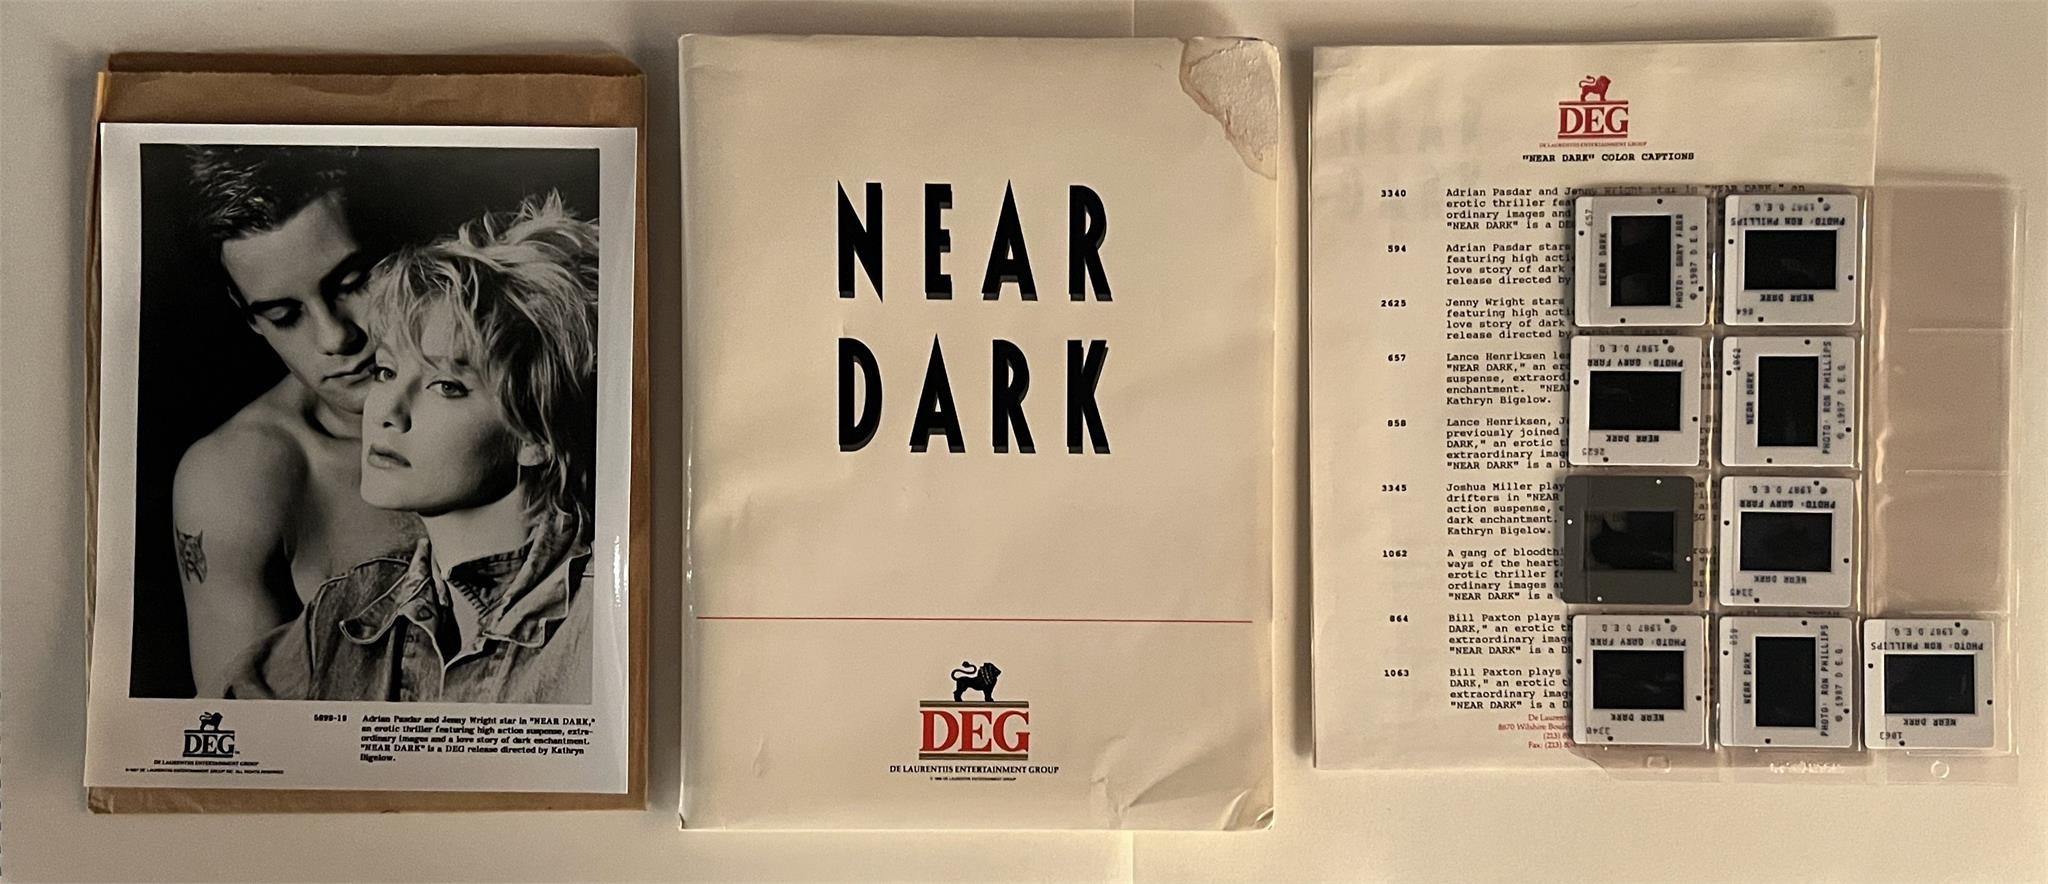 Near Dark press kit